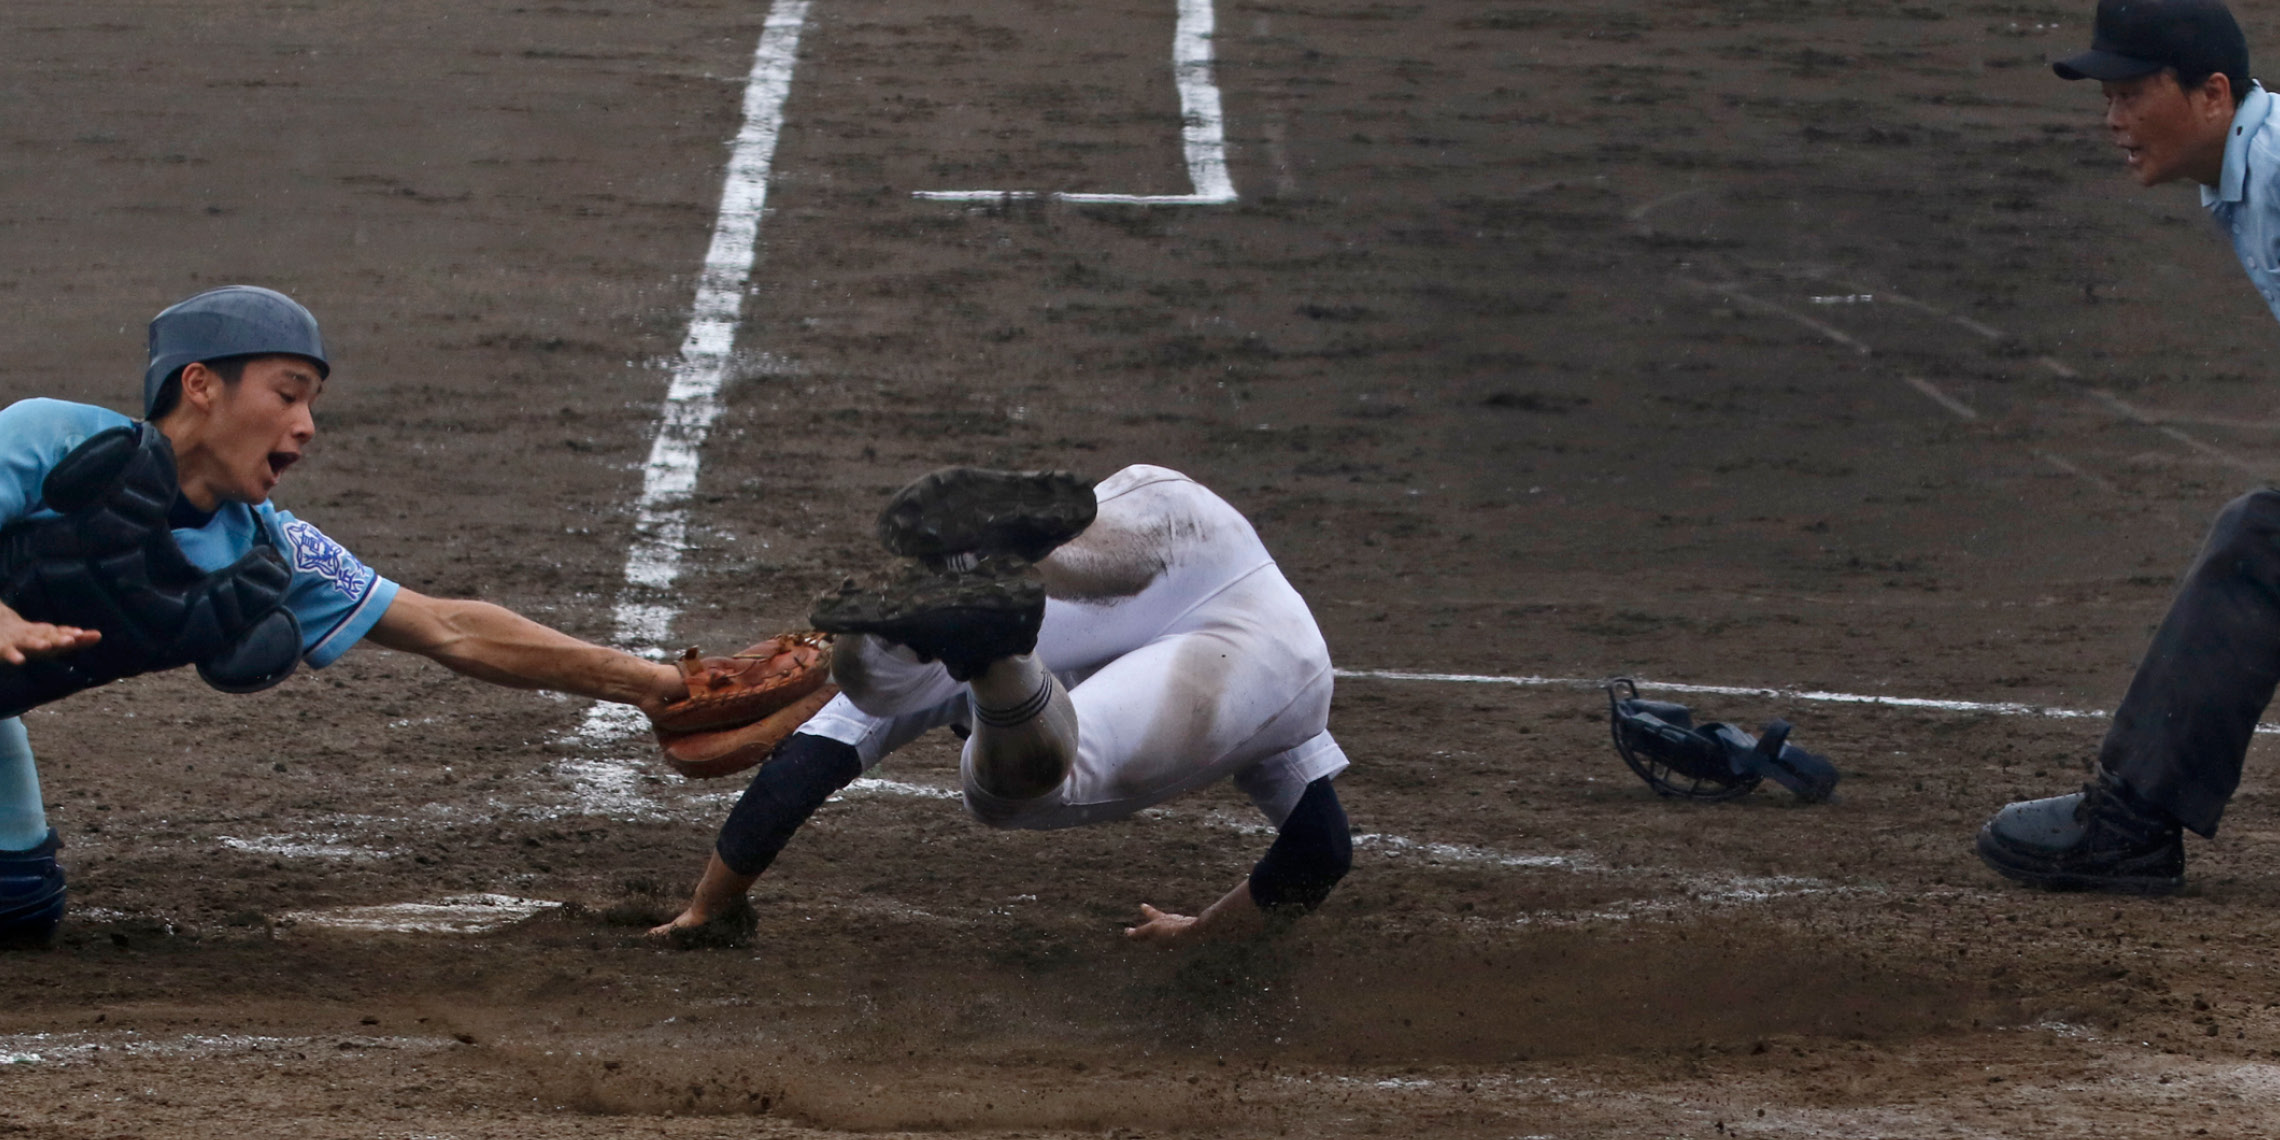 静高野球部後援会 野球は校技 学校の持つ文化